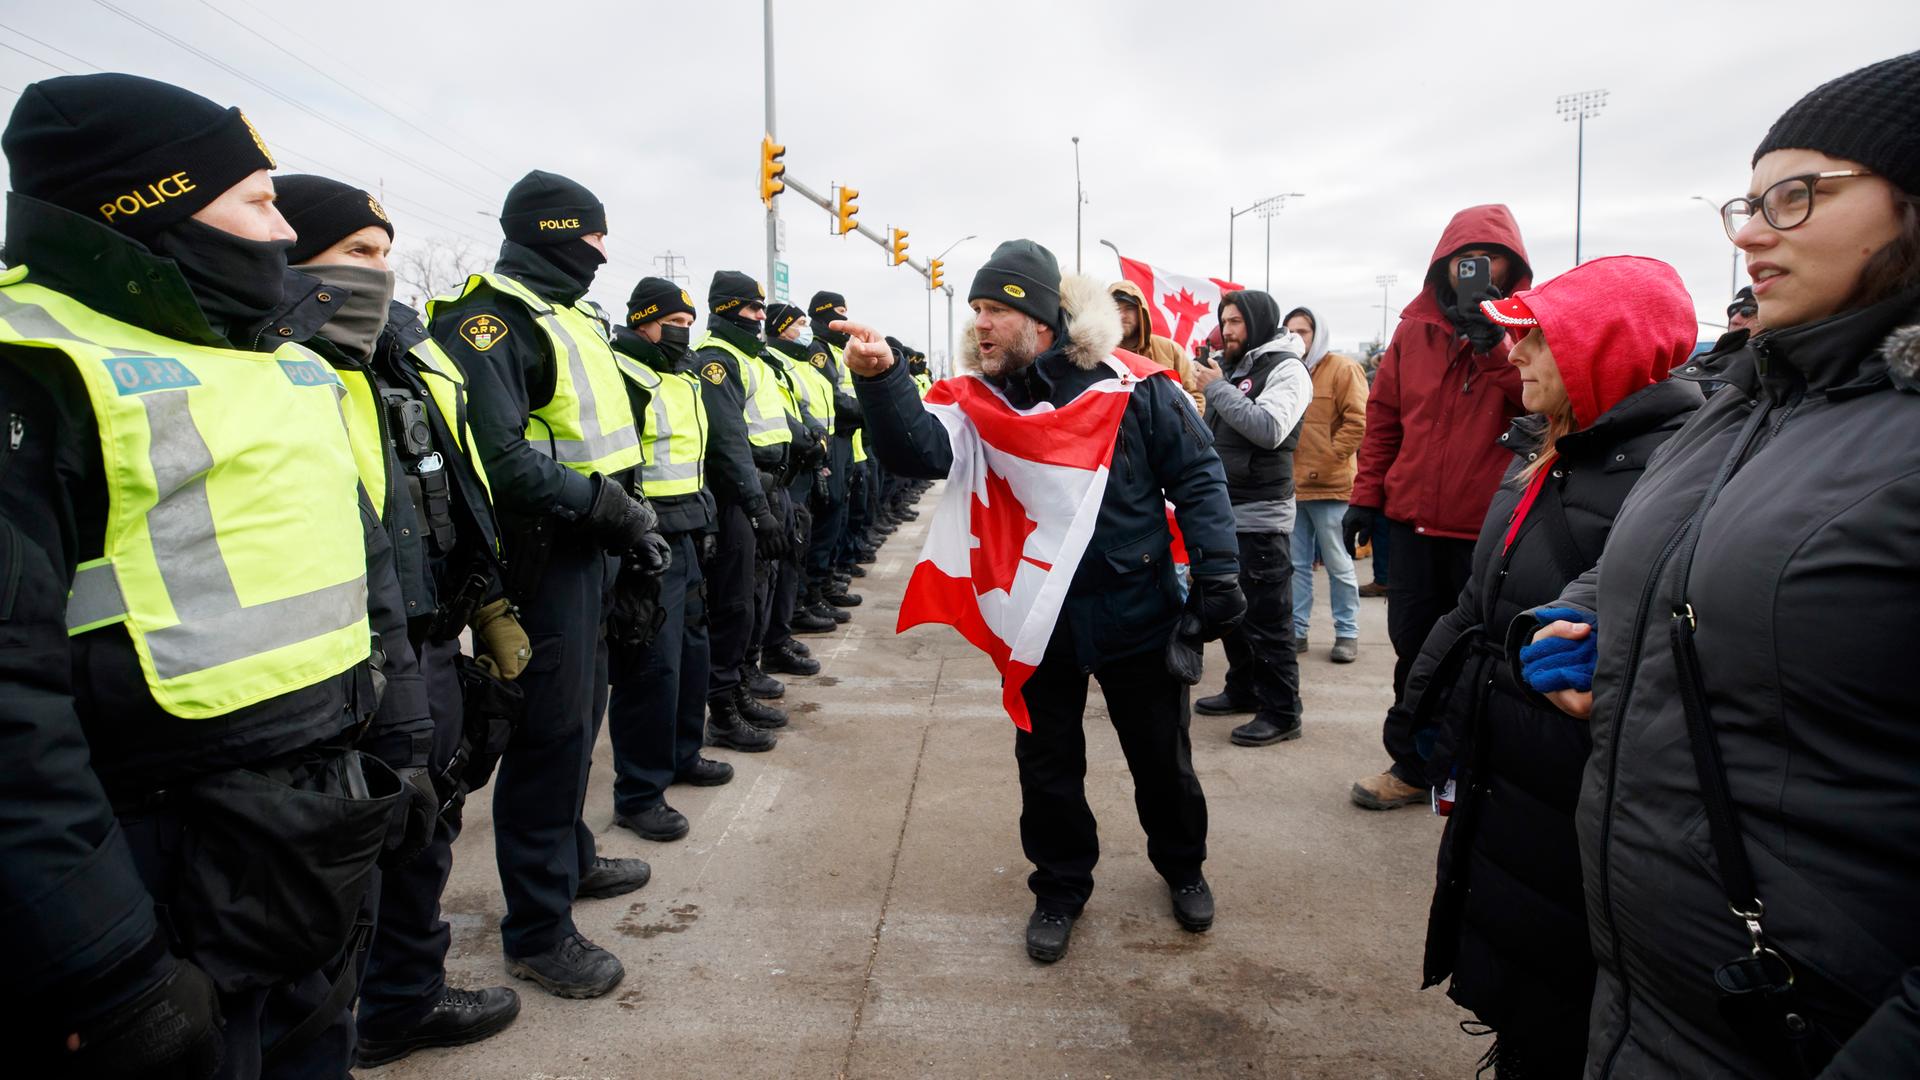 Protestblockade in Kanada, ein Mann aus der Menschenmenge mit kanadischer Flagge um den Hals schreit die Polizeibeamten an, 12. Februar 2022.